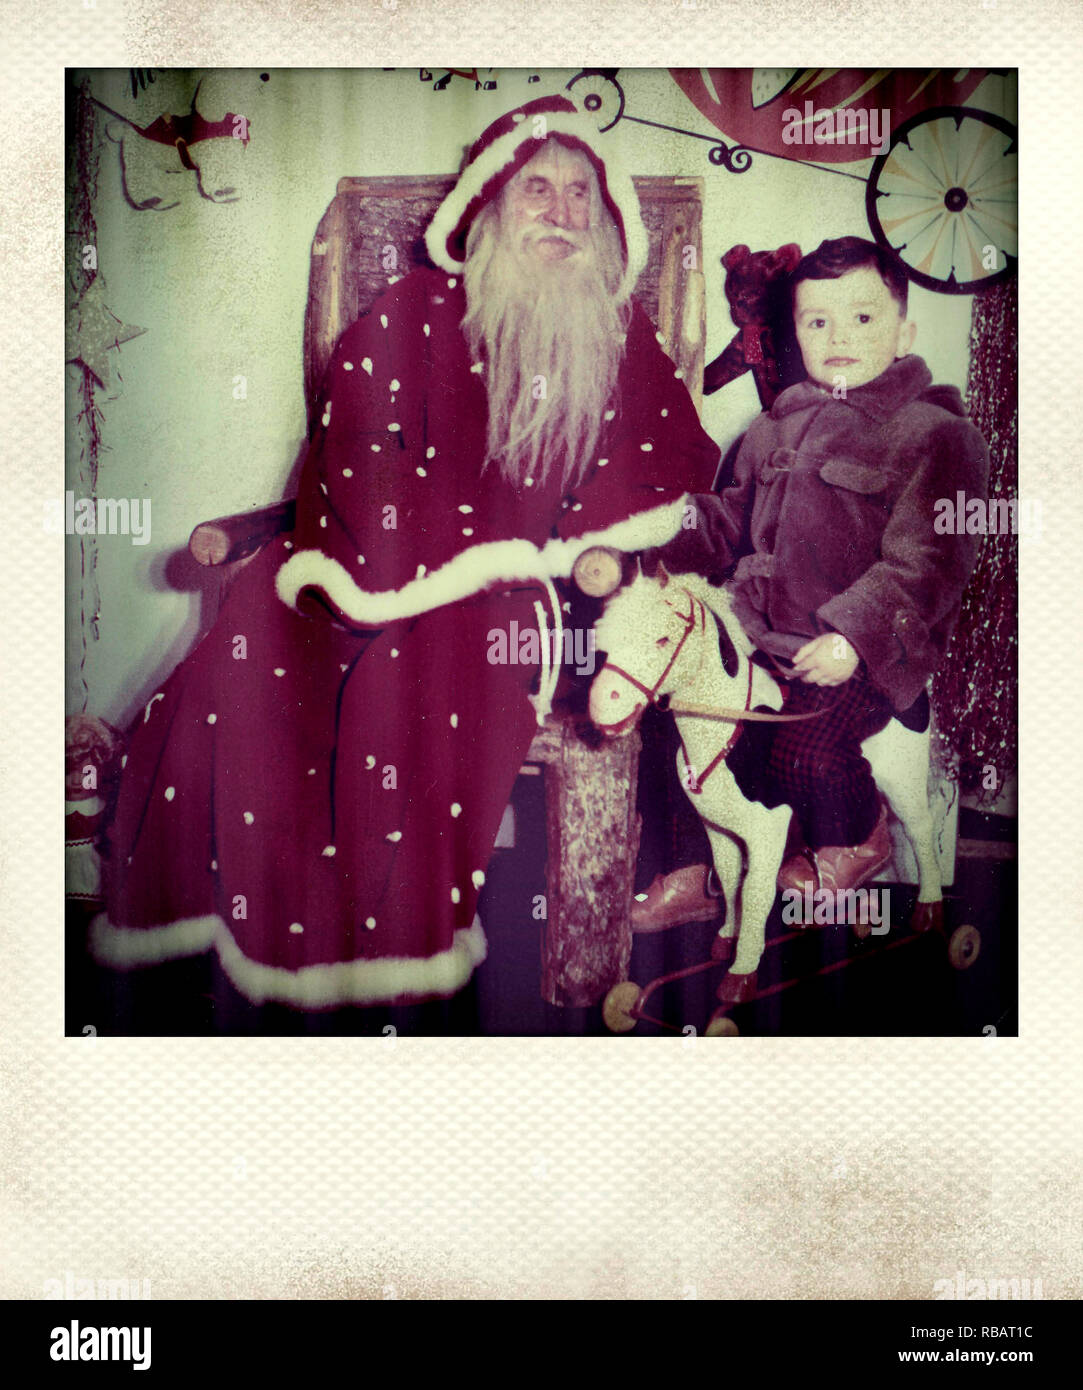 Photograph of a small boy riding a rocking horse next to Santa Claus Stock Photo